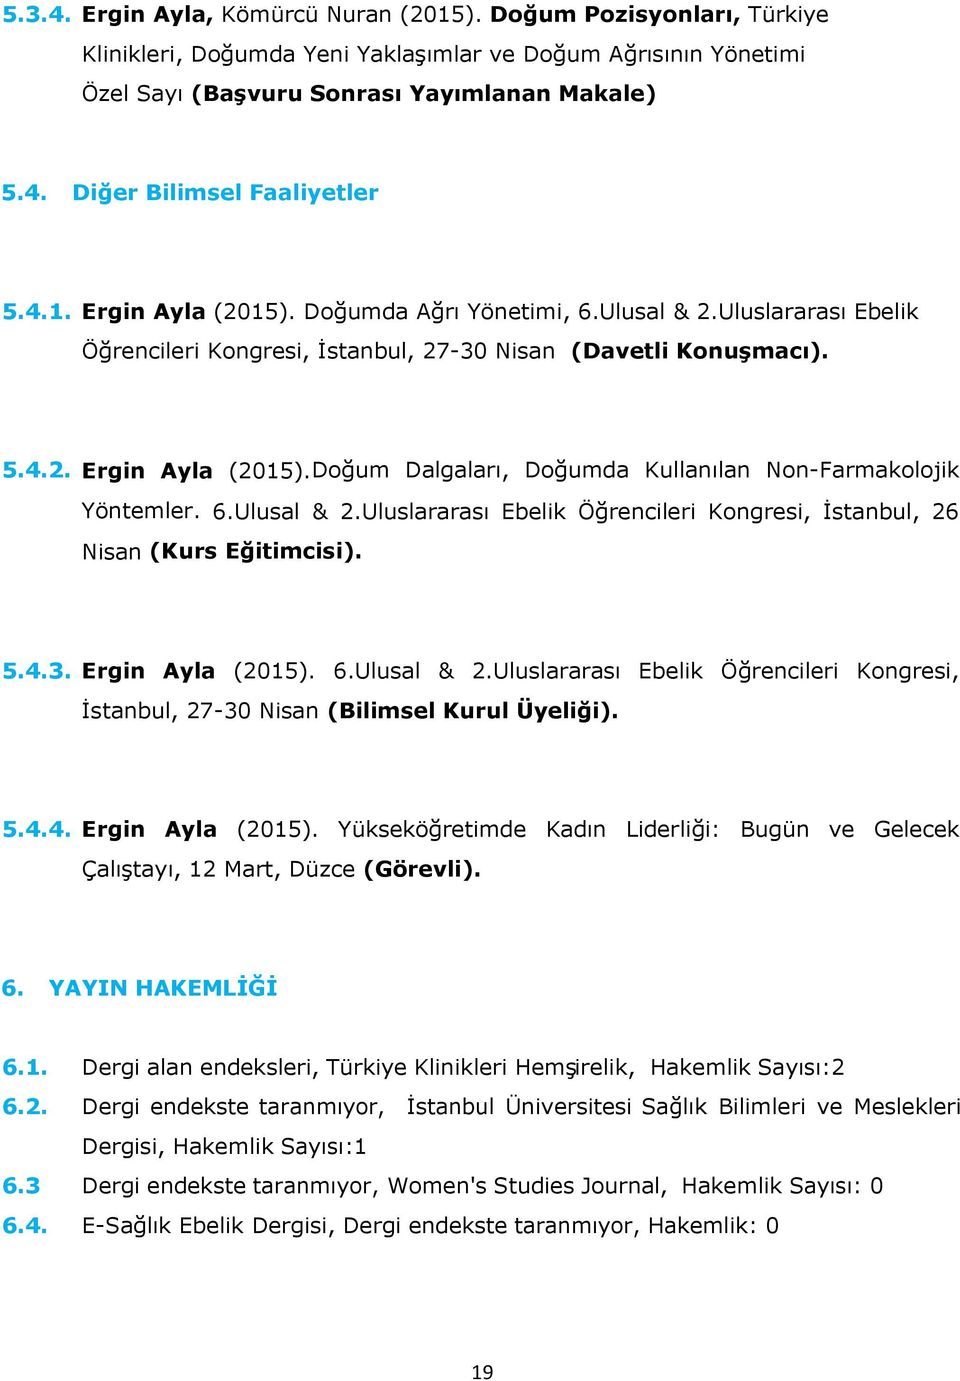 6.Ulusal & 2.Uluslararası Ebelik Öğrencileri Kongresi, İstanbul, 26 Nisan (Kurs Eğitimcisi). 5.4.3. Ergin Ayla (2015). 6.Ulusal & 2.Uluslararası Ebelik Öğrencileri Kongresi, İstanbul, 27-30 Nisan (Bilimsel Kurul Üyeliği).